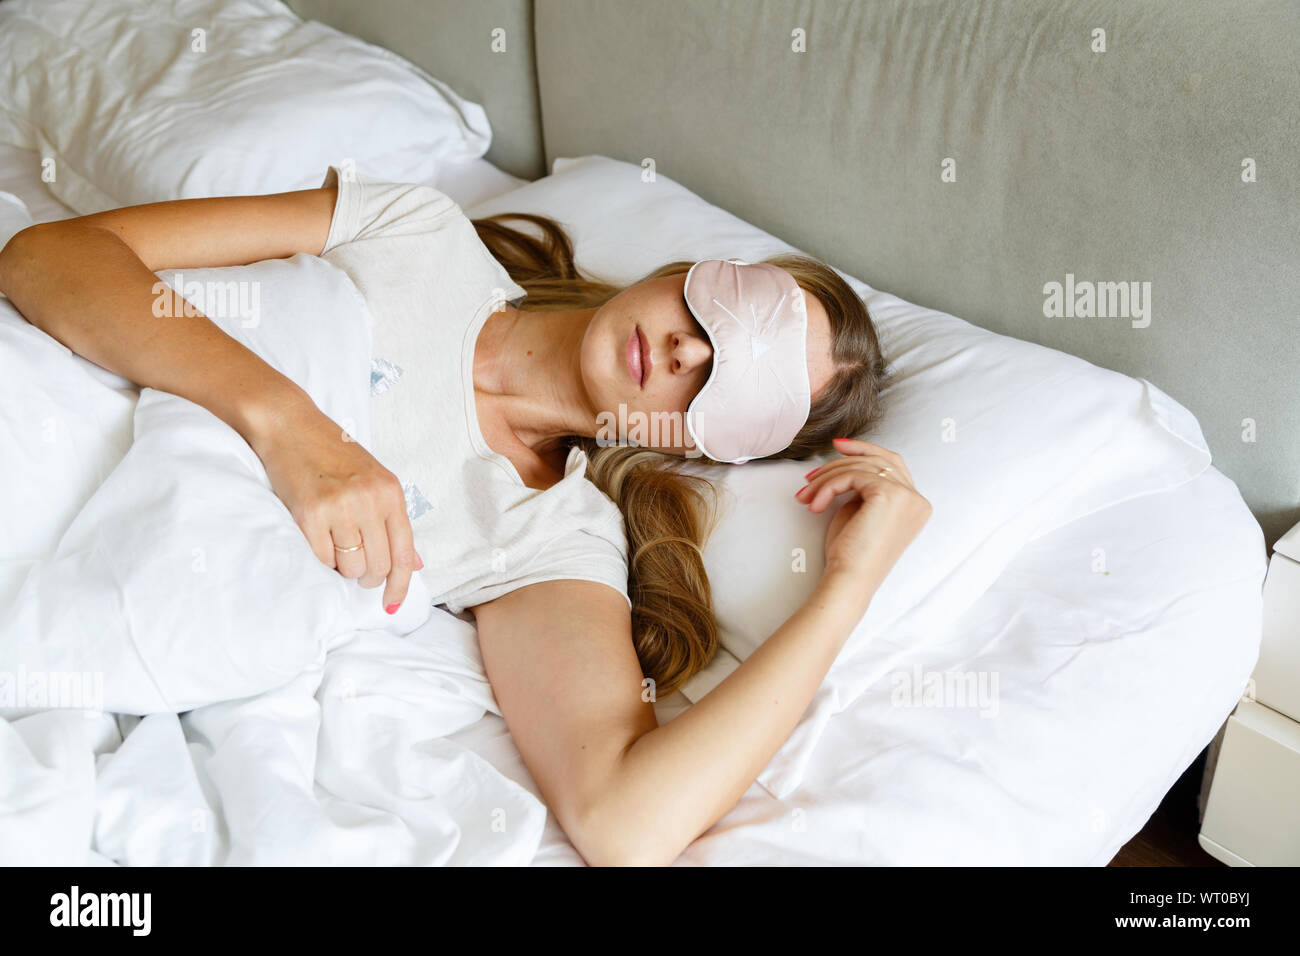 Junge Frau mit langen blonden Haaren schläft auf bequemes Bett in einer Maske zum Schlafen. Augenbinde auf Auge. Morgens zu Hause. Weiß Kissen und Decke Stockfoto